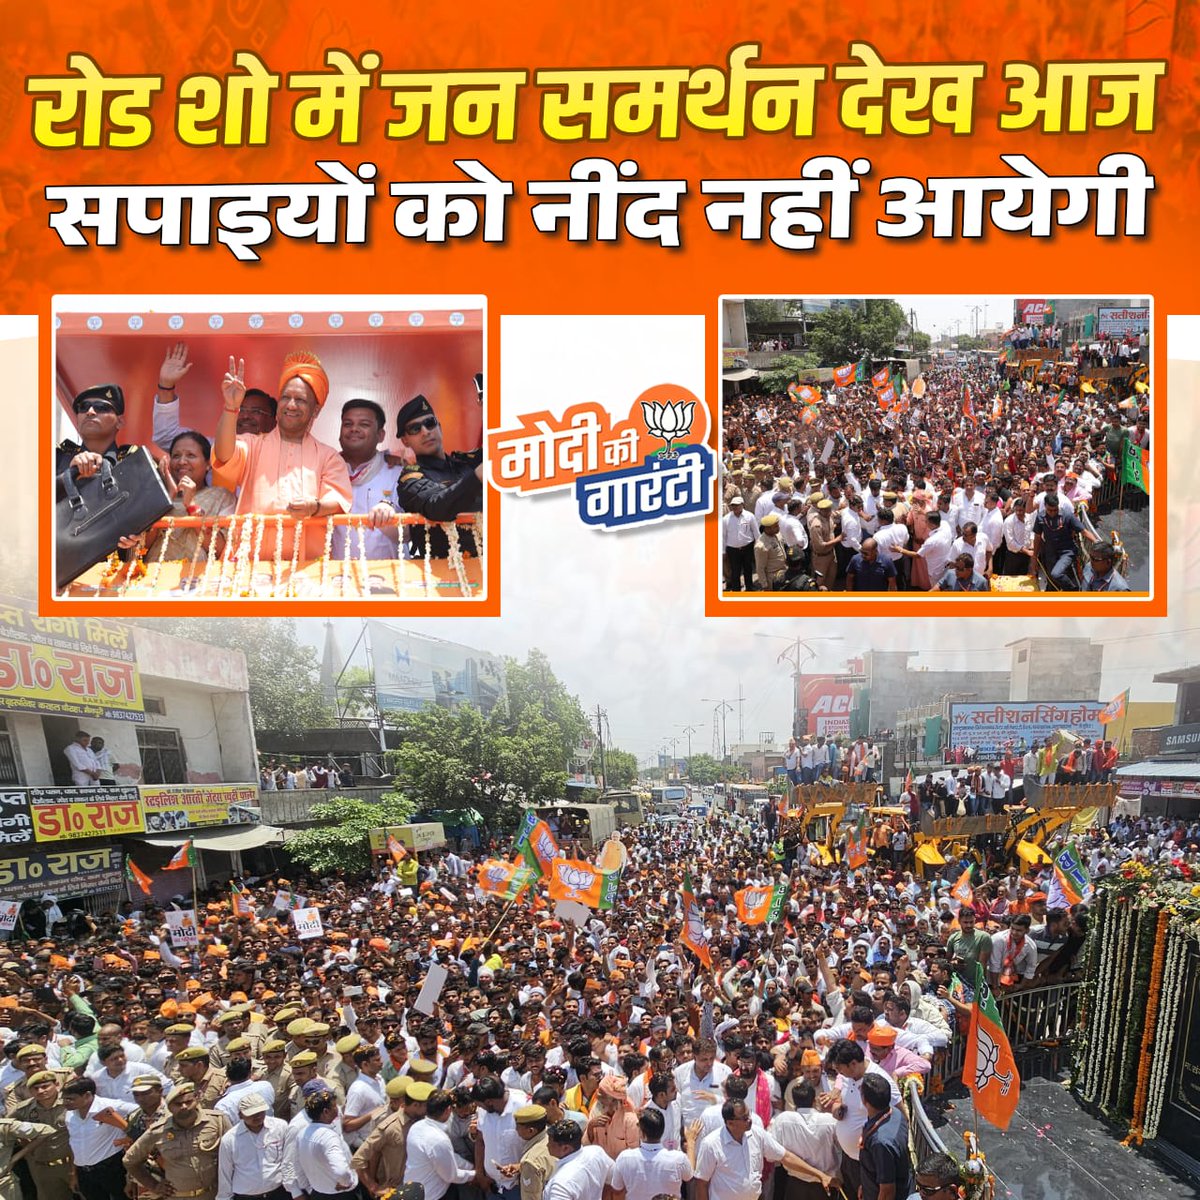 आज के रोड शो में भाजपा के समर्थन में उमड़ा मैनपुरी, जनता का संकल्प स्पष्ट है। #MainpuriLovesYogi